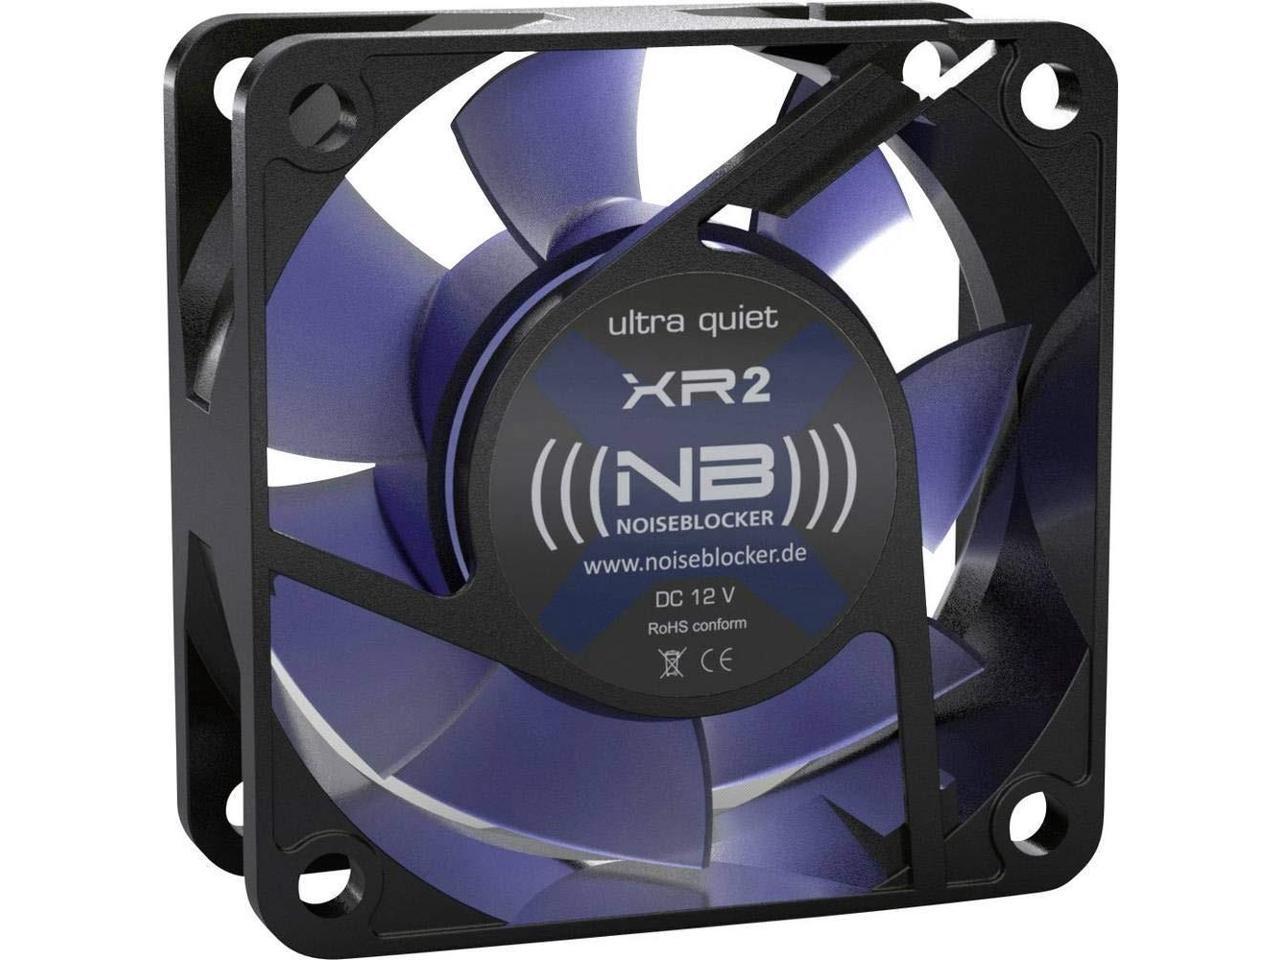 Noiseblocker Black Silent XR-2 60mm Computer Case Fan